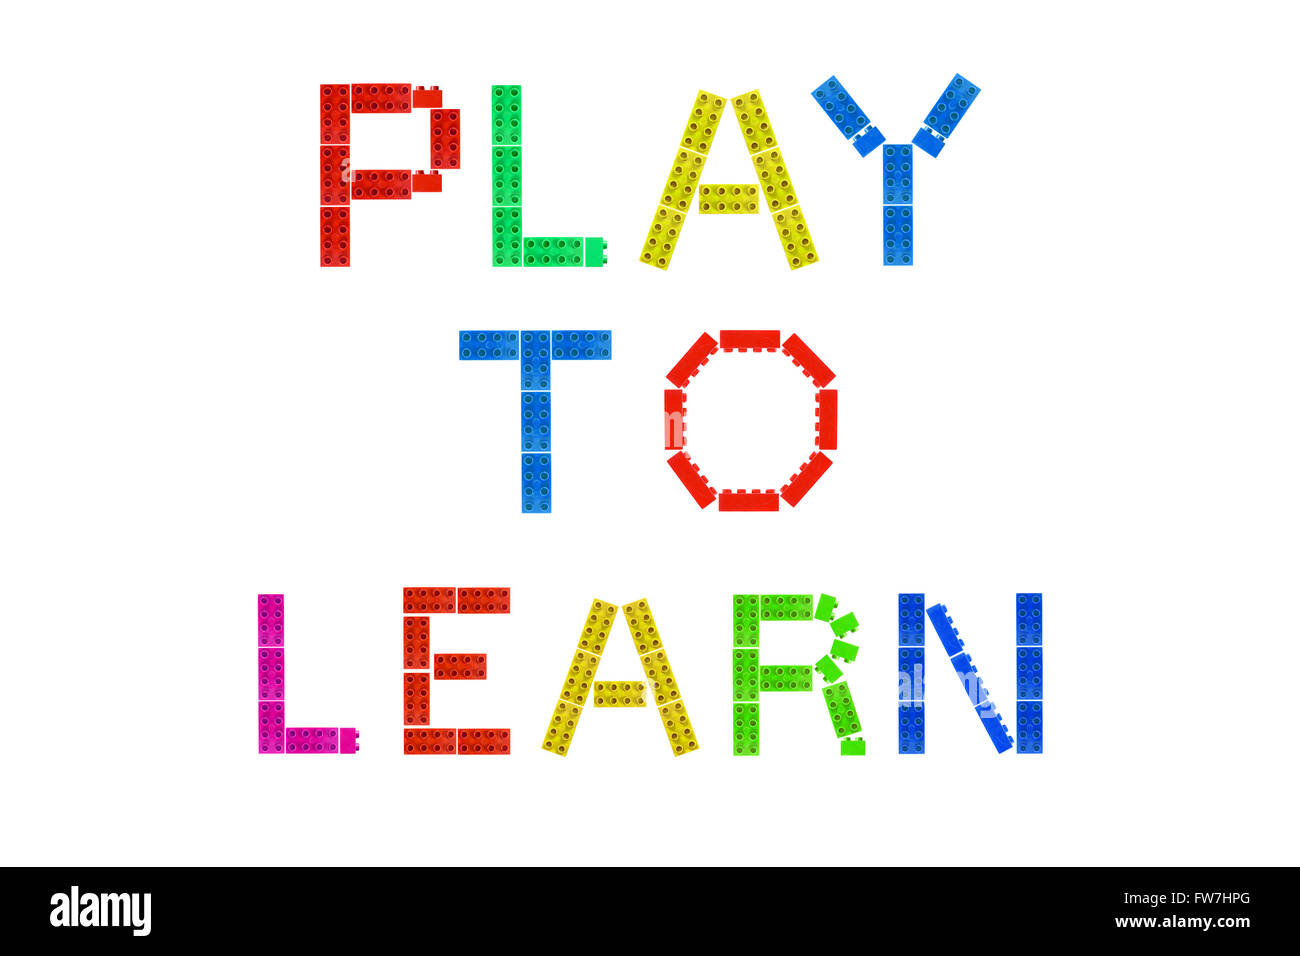 Jouer pour apprendre créé à partir de morceaux de Lego photographié sur un fond blanc. Banque D'Images